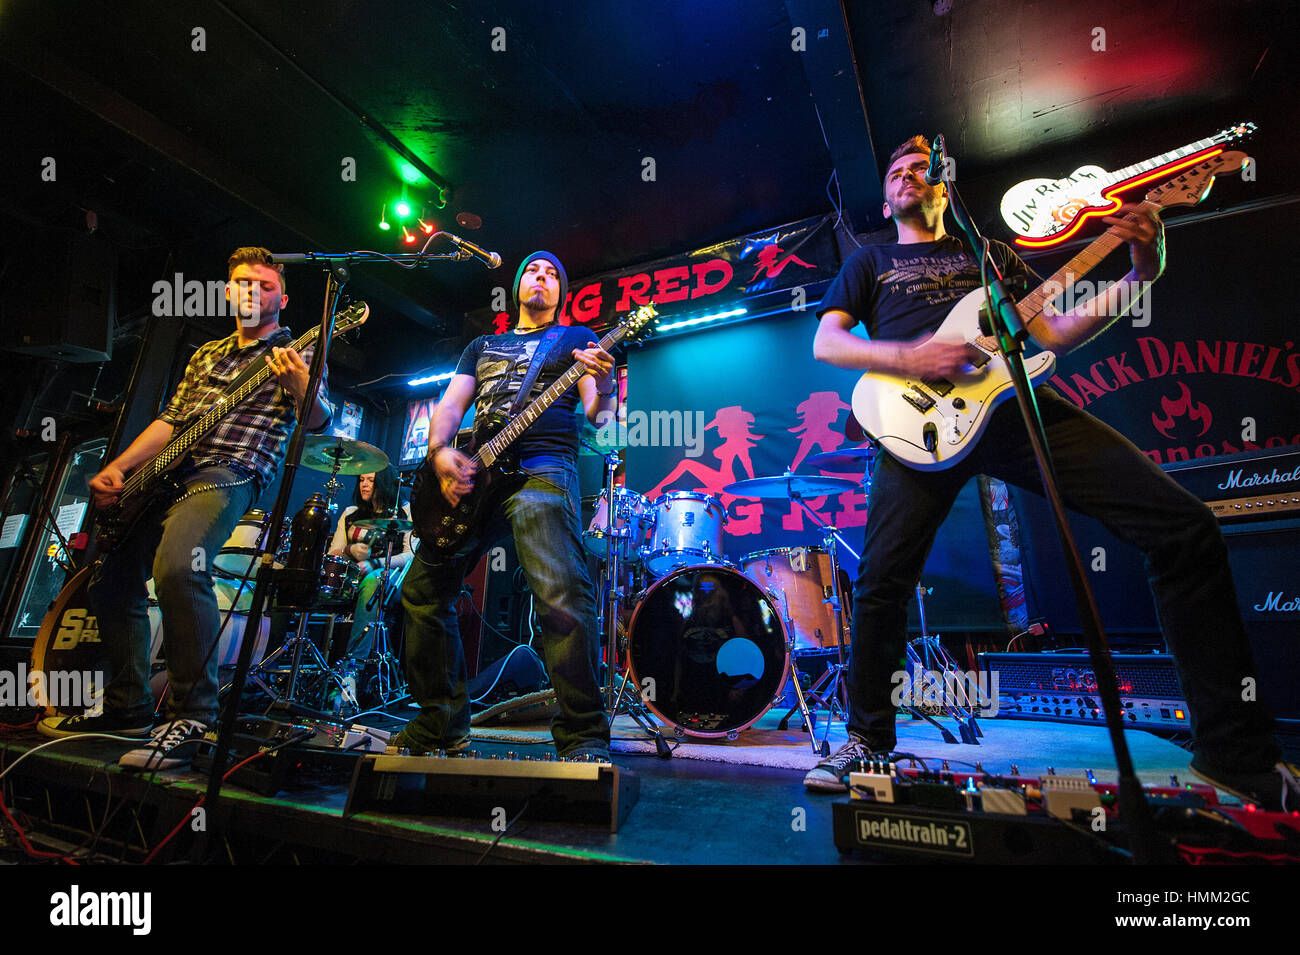 Banda de rock pesado Piedra destrozada jugar lugar el Big Red, Holloway Road, Londres. Su primer concierto en Londres. Foto de stock